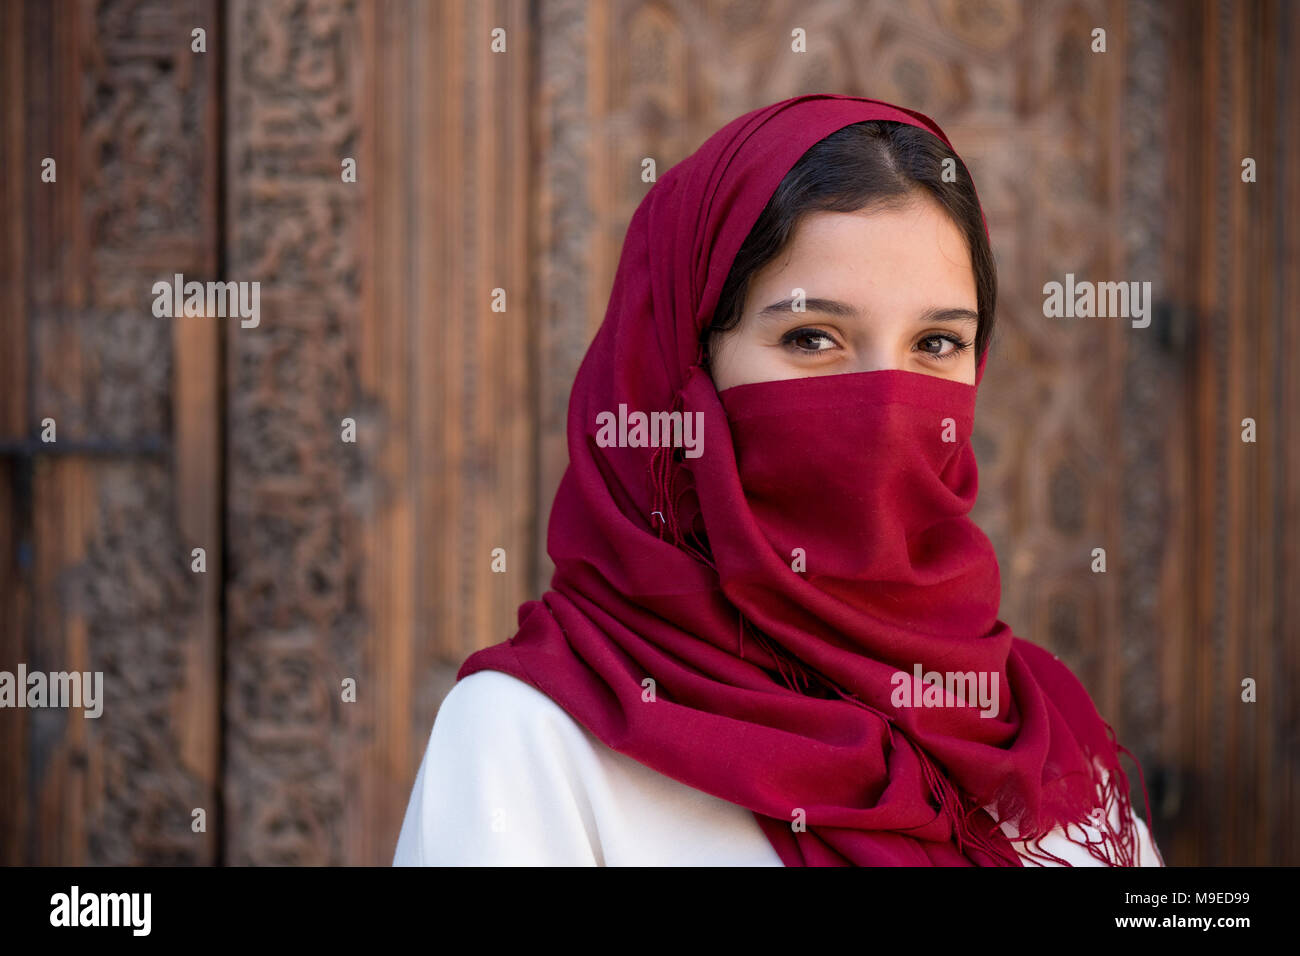 Mujer Con Un Pañuelo Rojo En Su Cabeza Imagen de archivo - Imagen